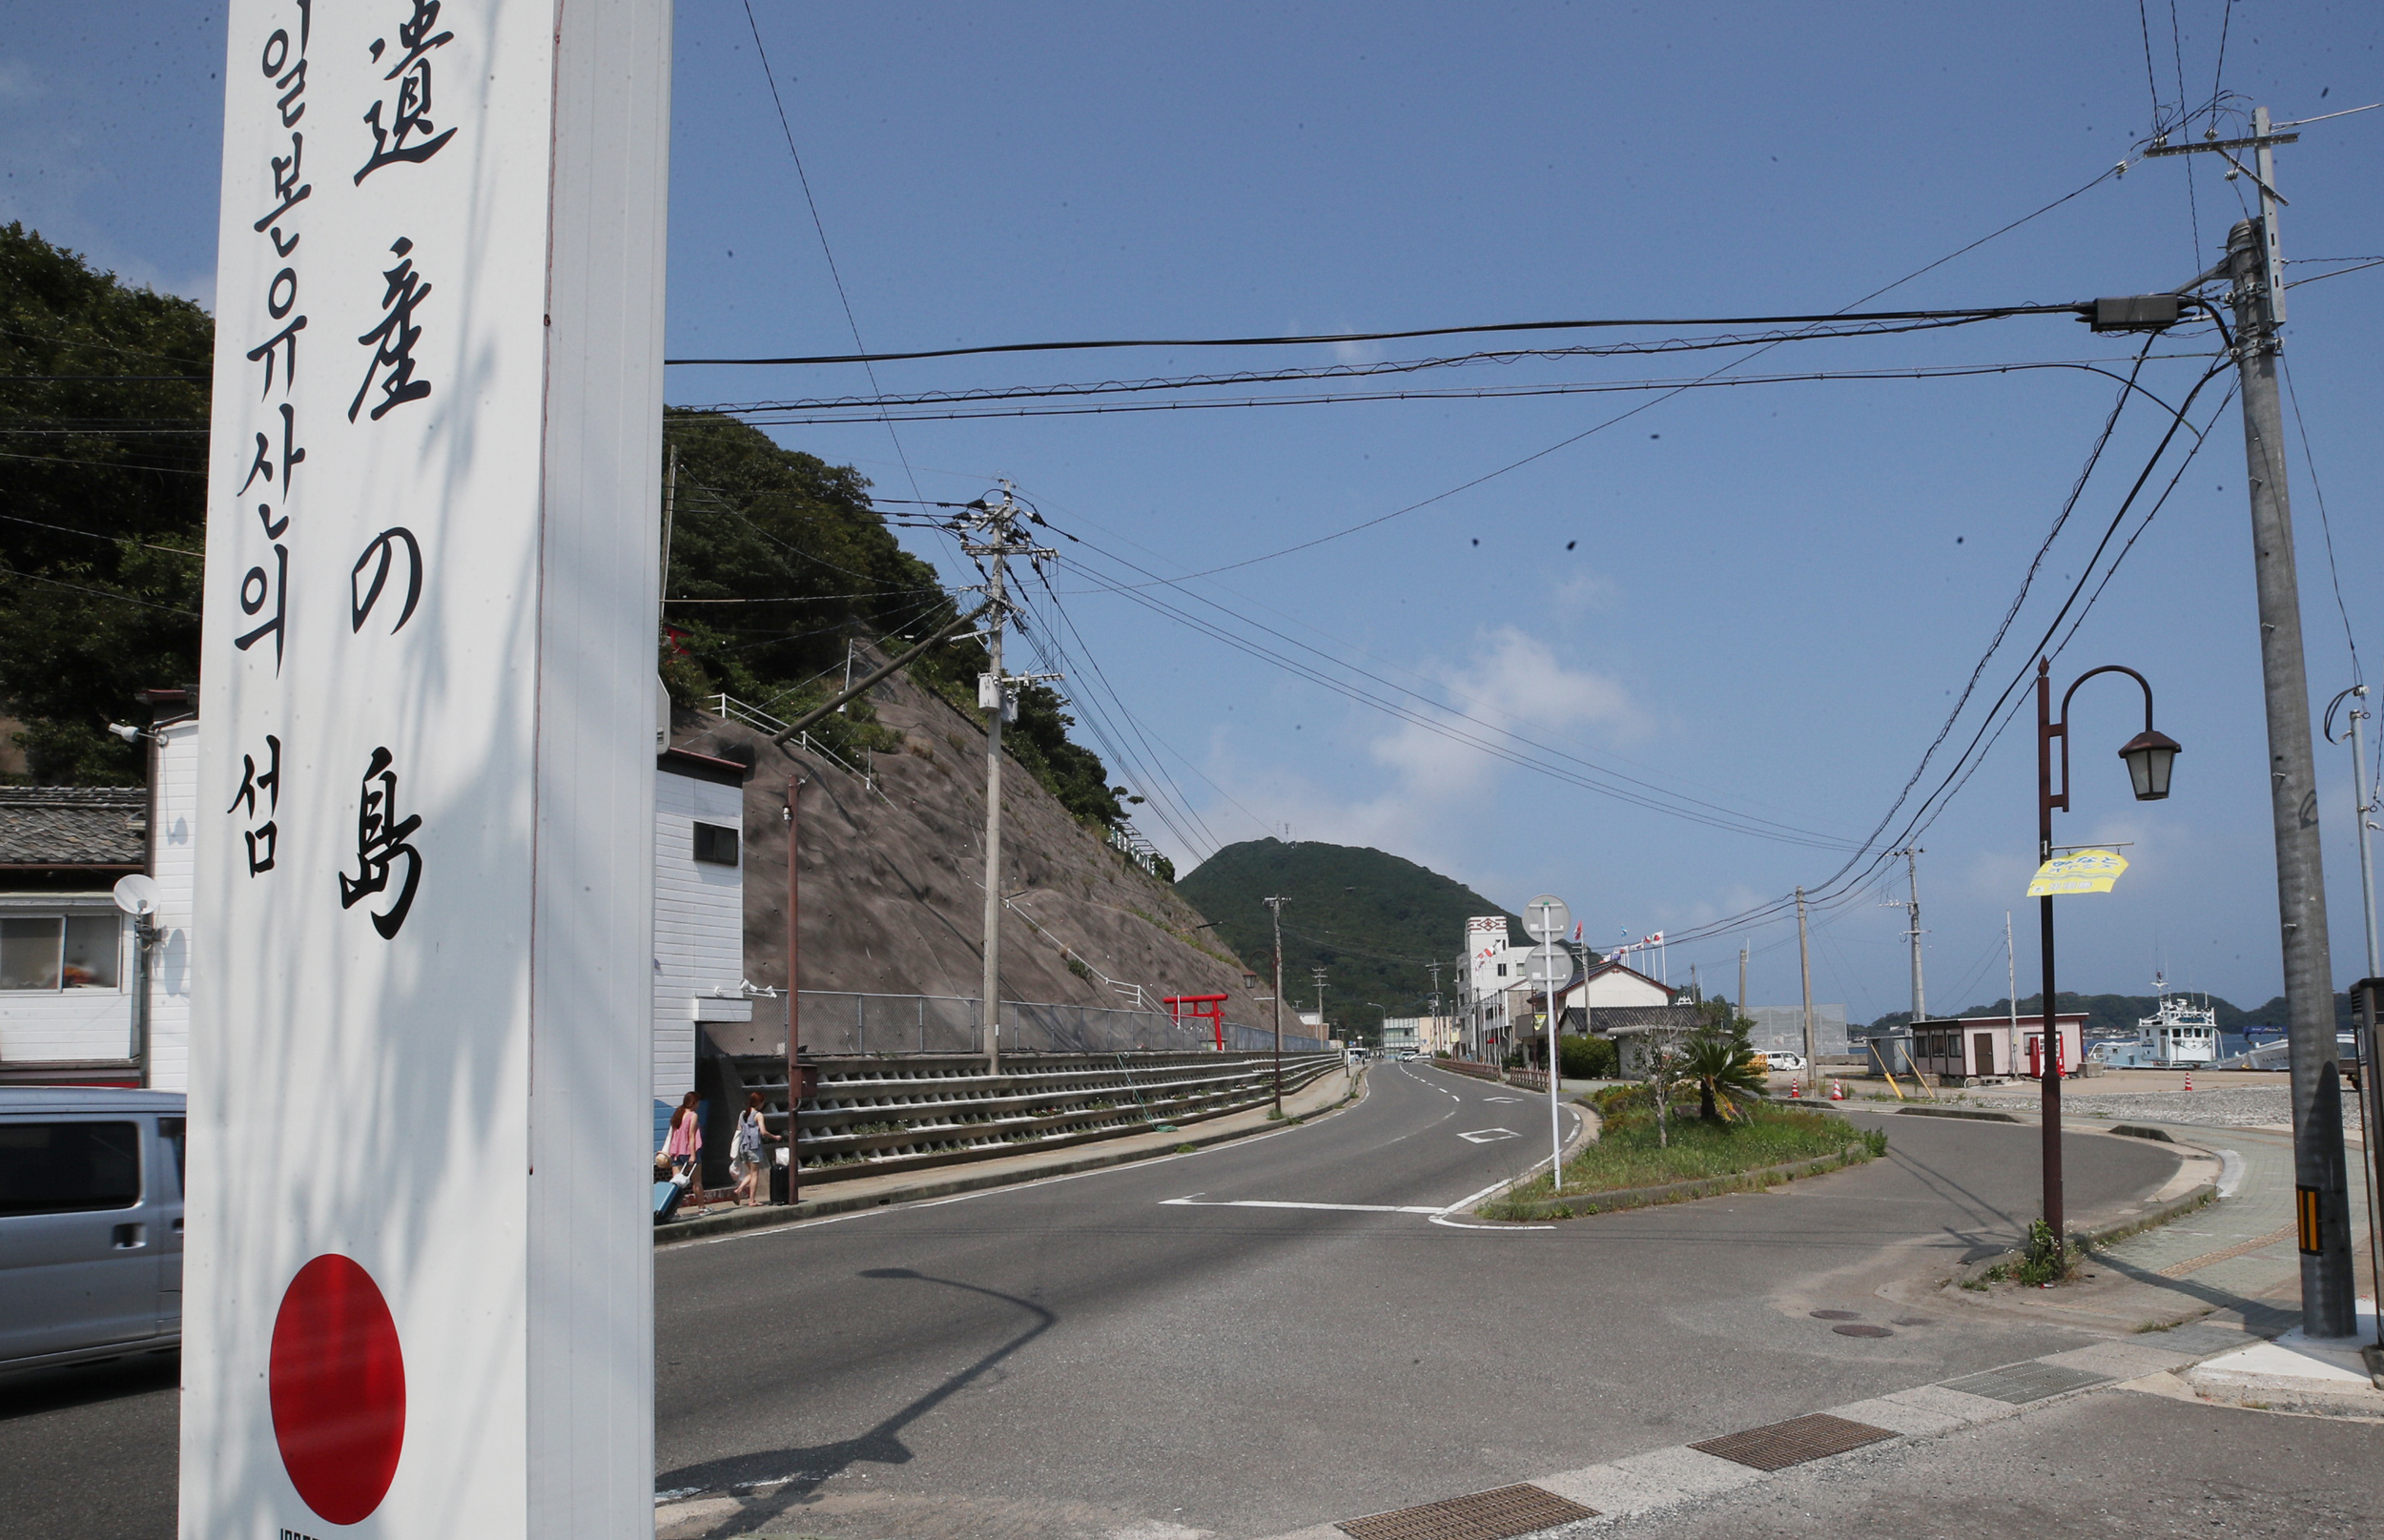 일본 불매 운동으로 썰렁한 대마도 거리